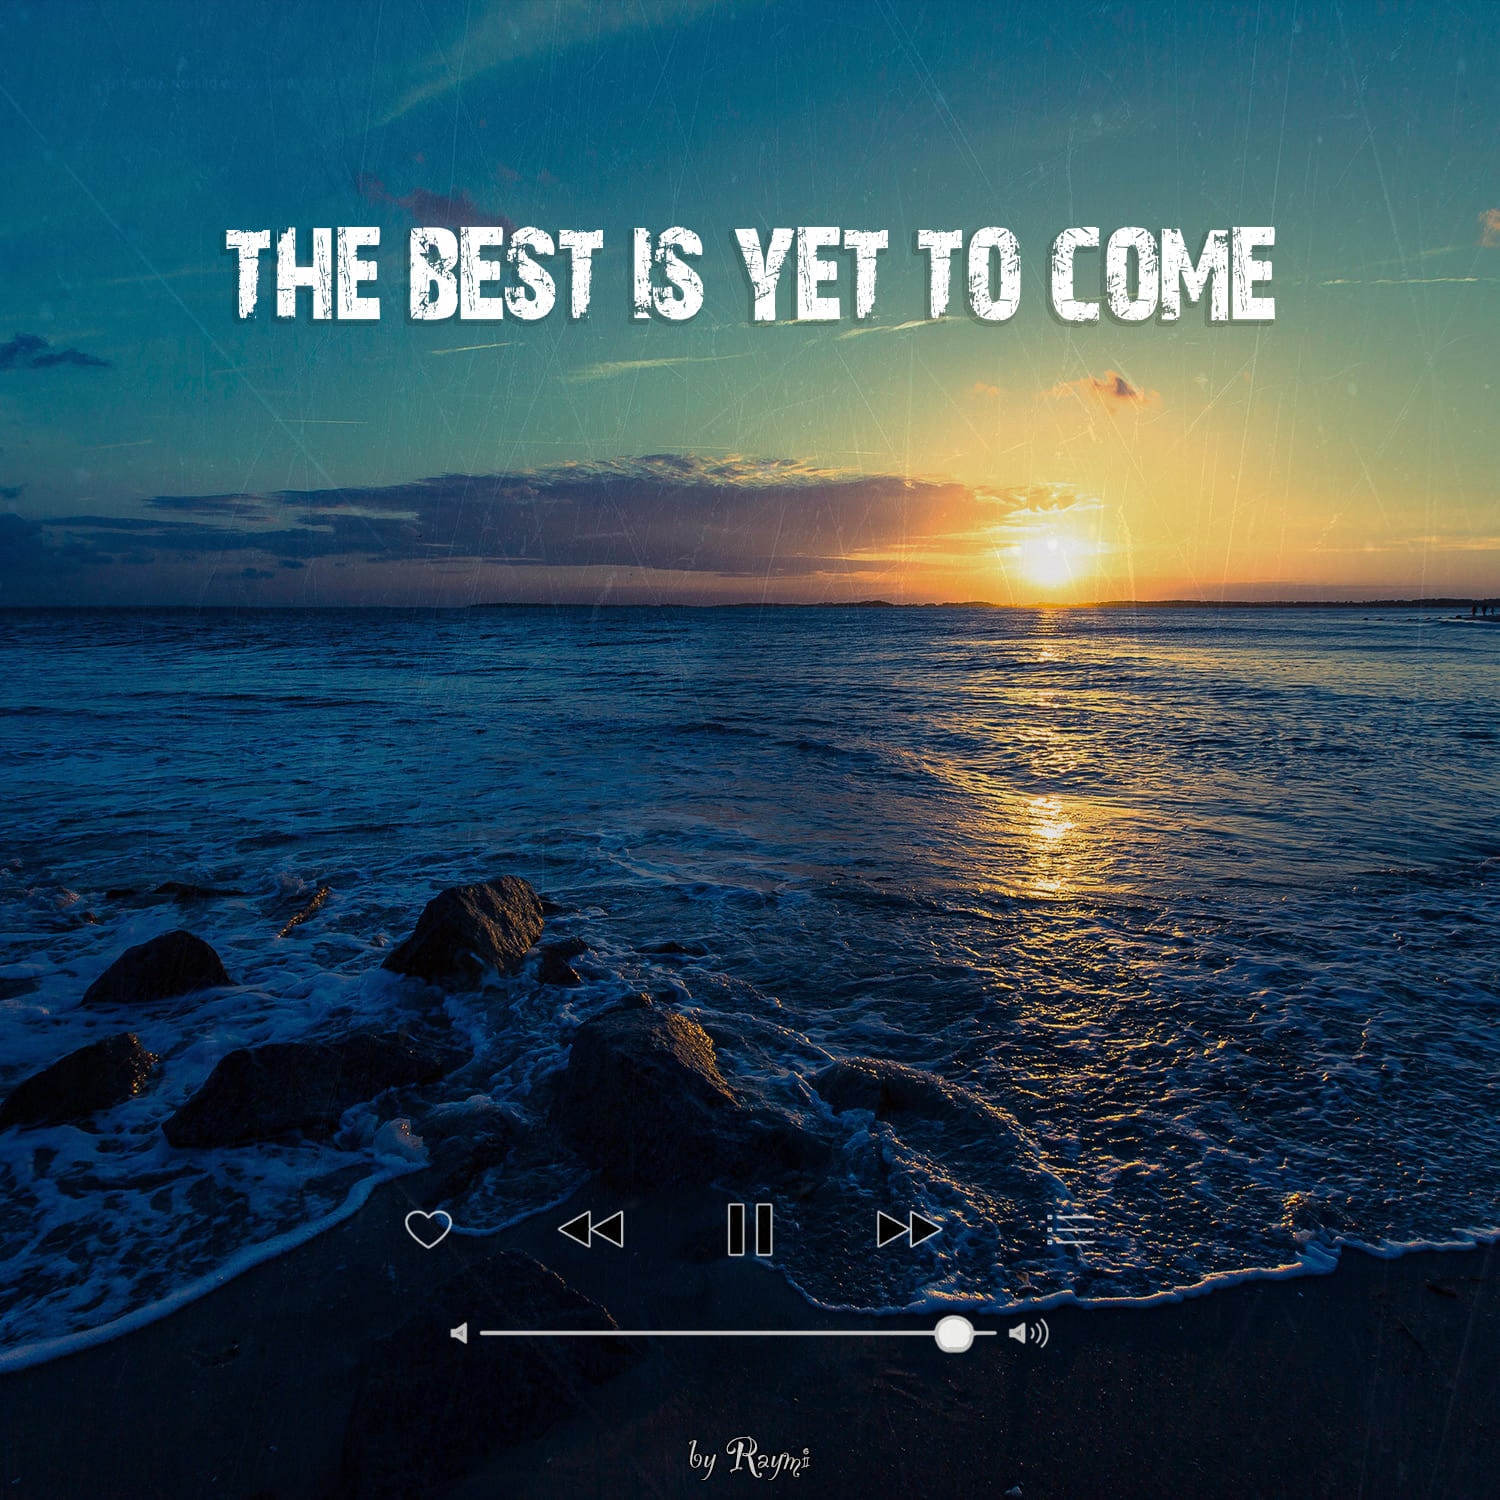 обложка бита, Raymi, музыка, cover, The best is yet to come (радостный, энергичный, летний pop бит)